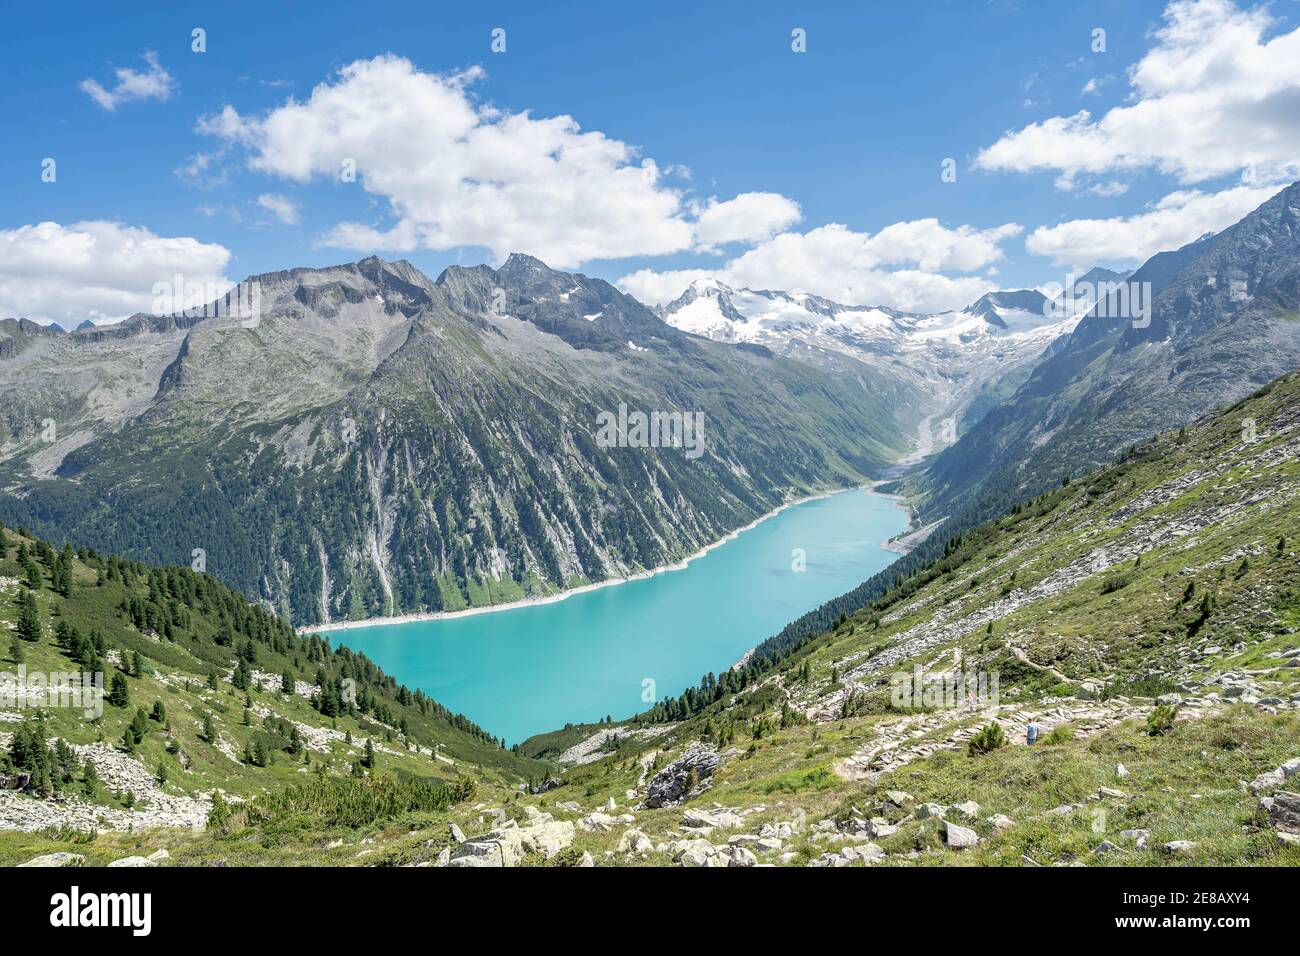 Breathtaking view of schlegeisspeicher glacier reservoir in Zillertal alps in Austria Stock Photo